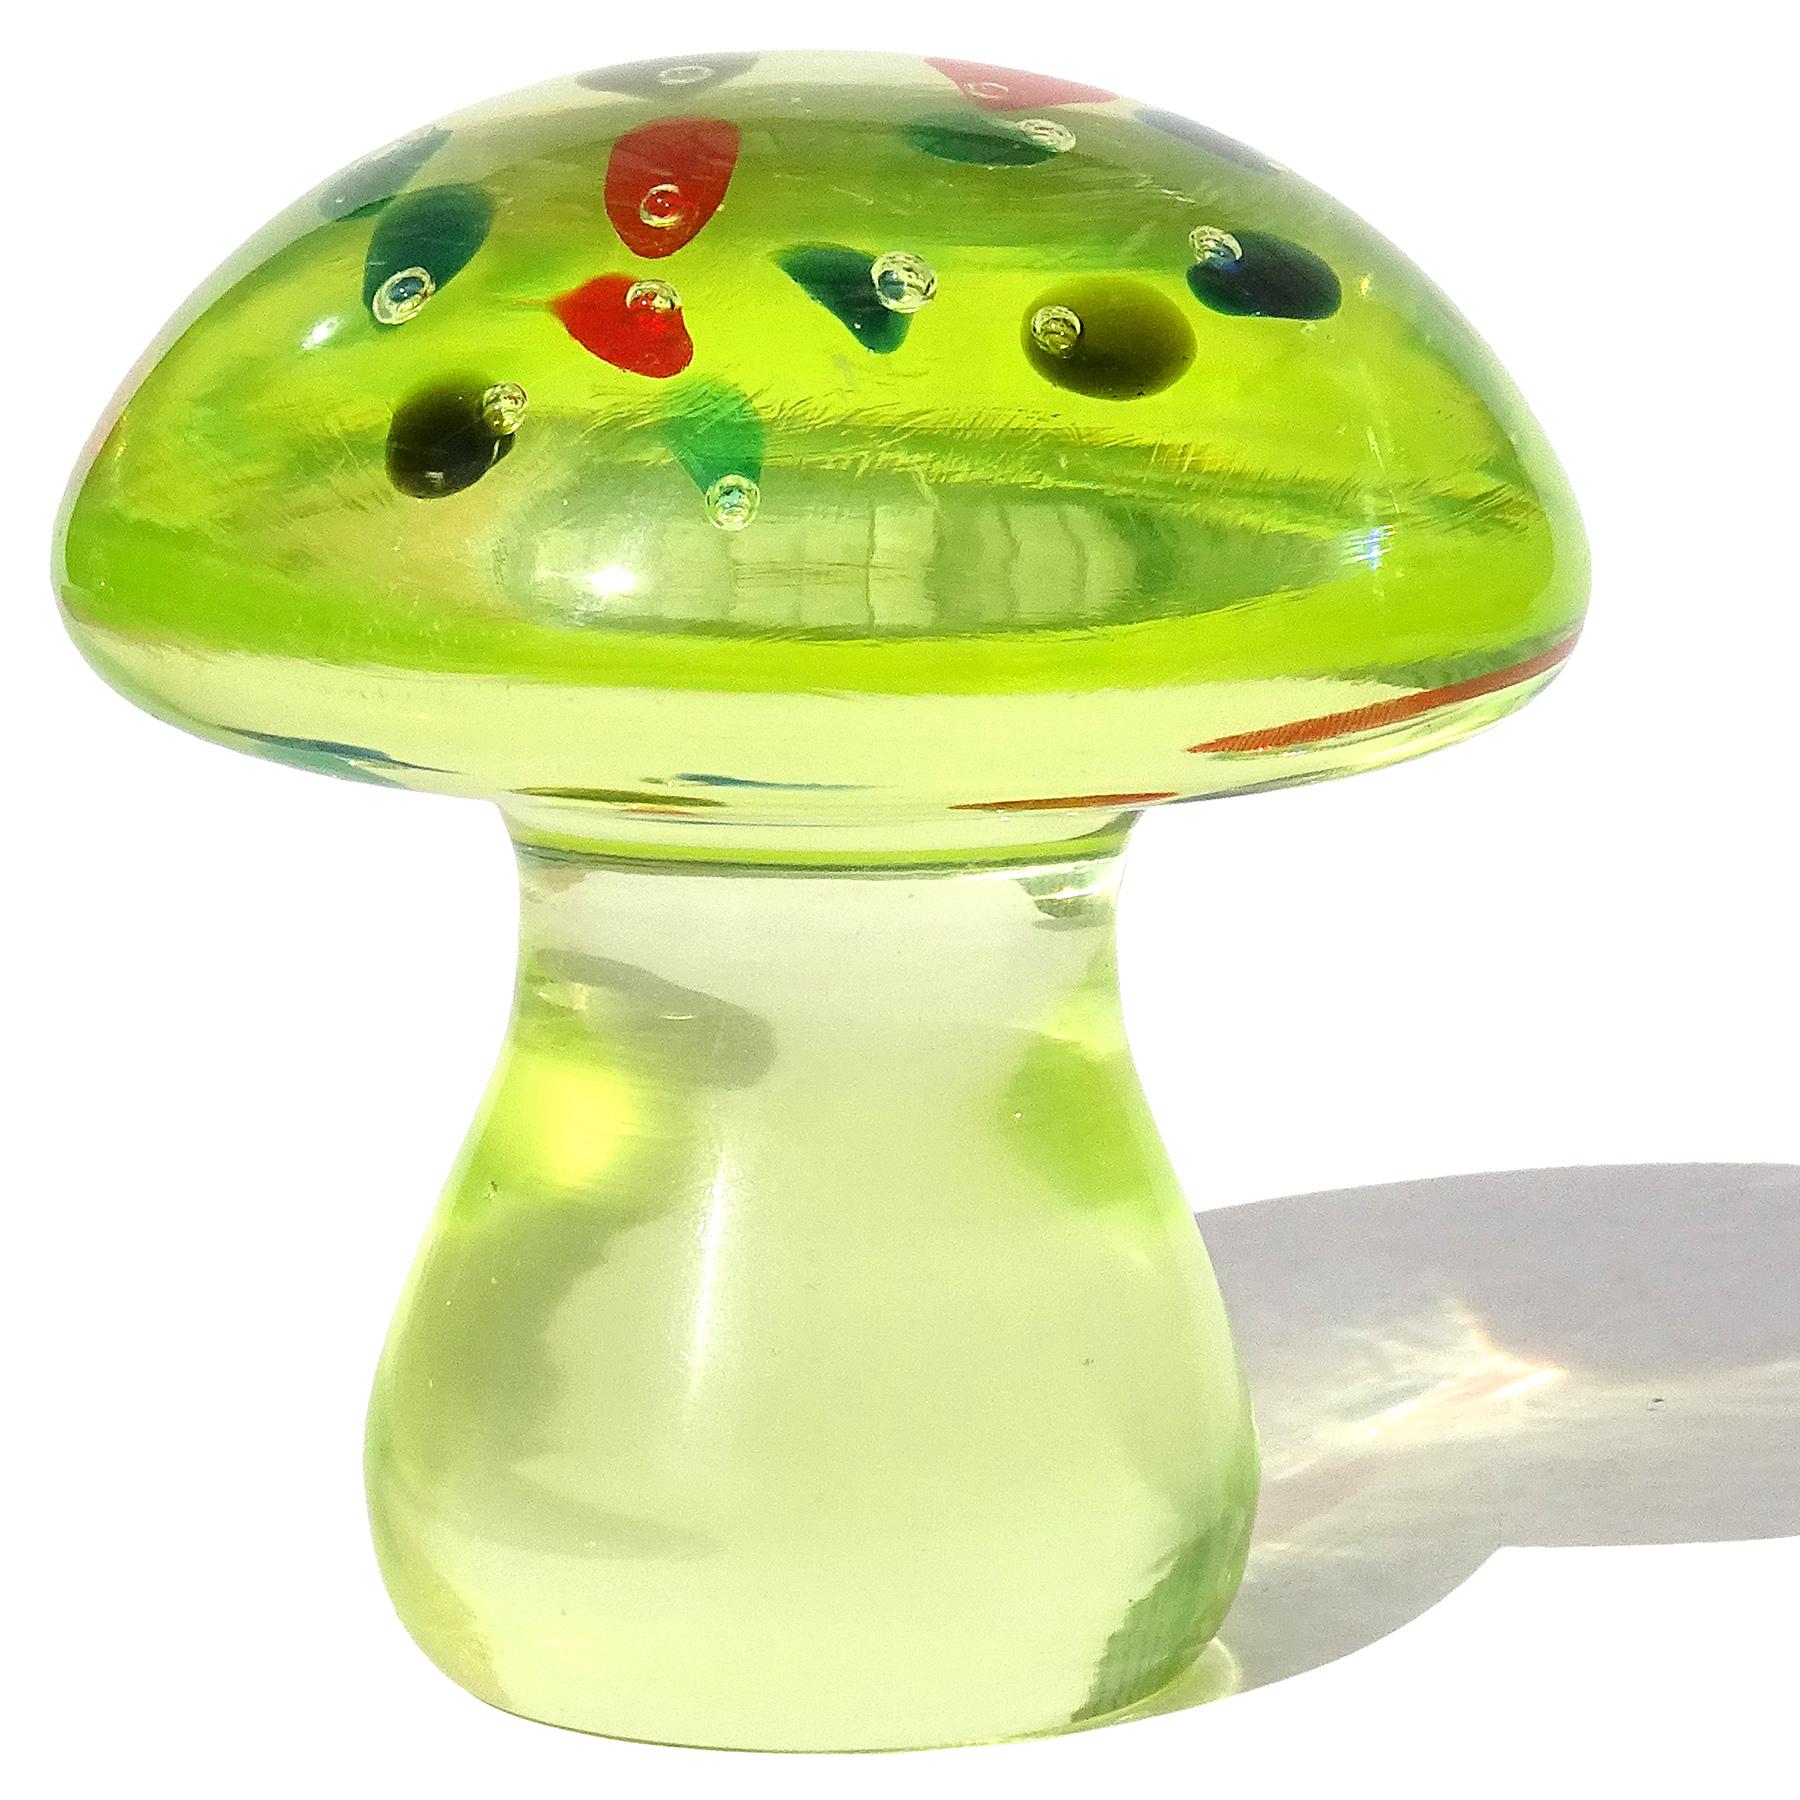 By Vintage Murano hand blown Sommerso light green, with multicolor spots Italian art glass mushroom / toadstool paperweight. Documenté à la société Cenedese. Le chapeau du champignon contient des bulles flottantes contrôlées, qui sont entourées de